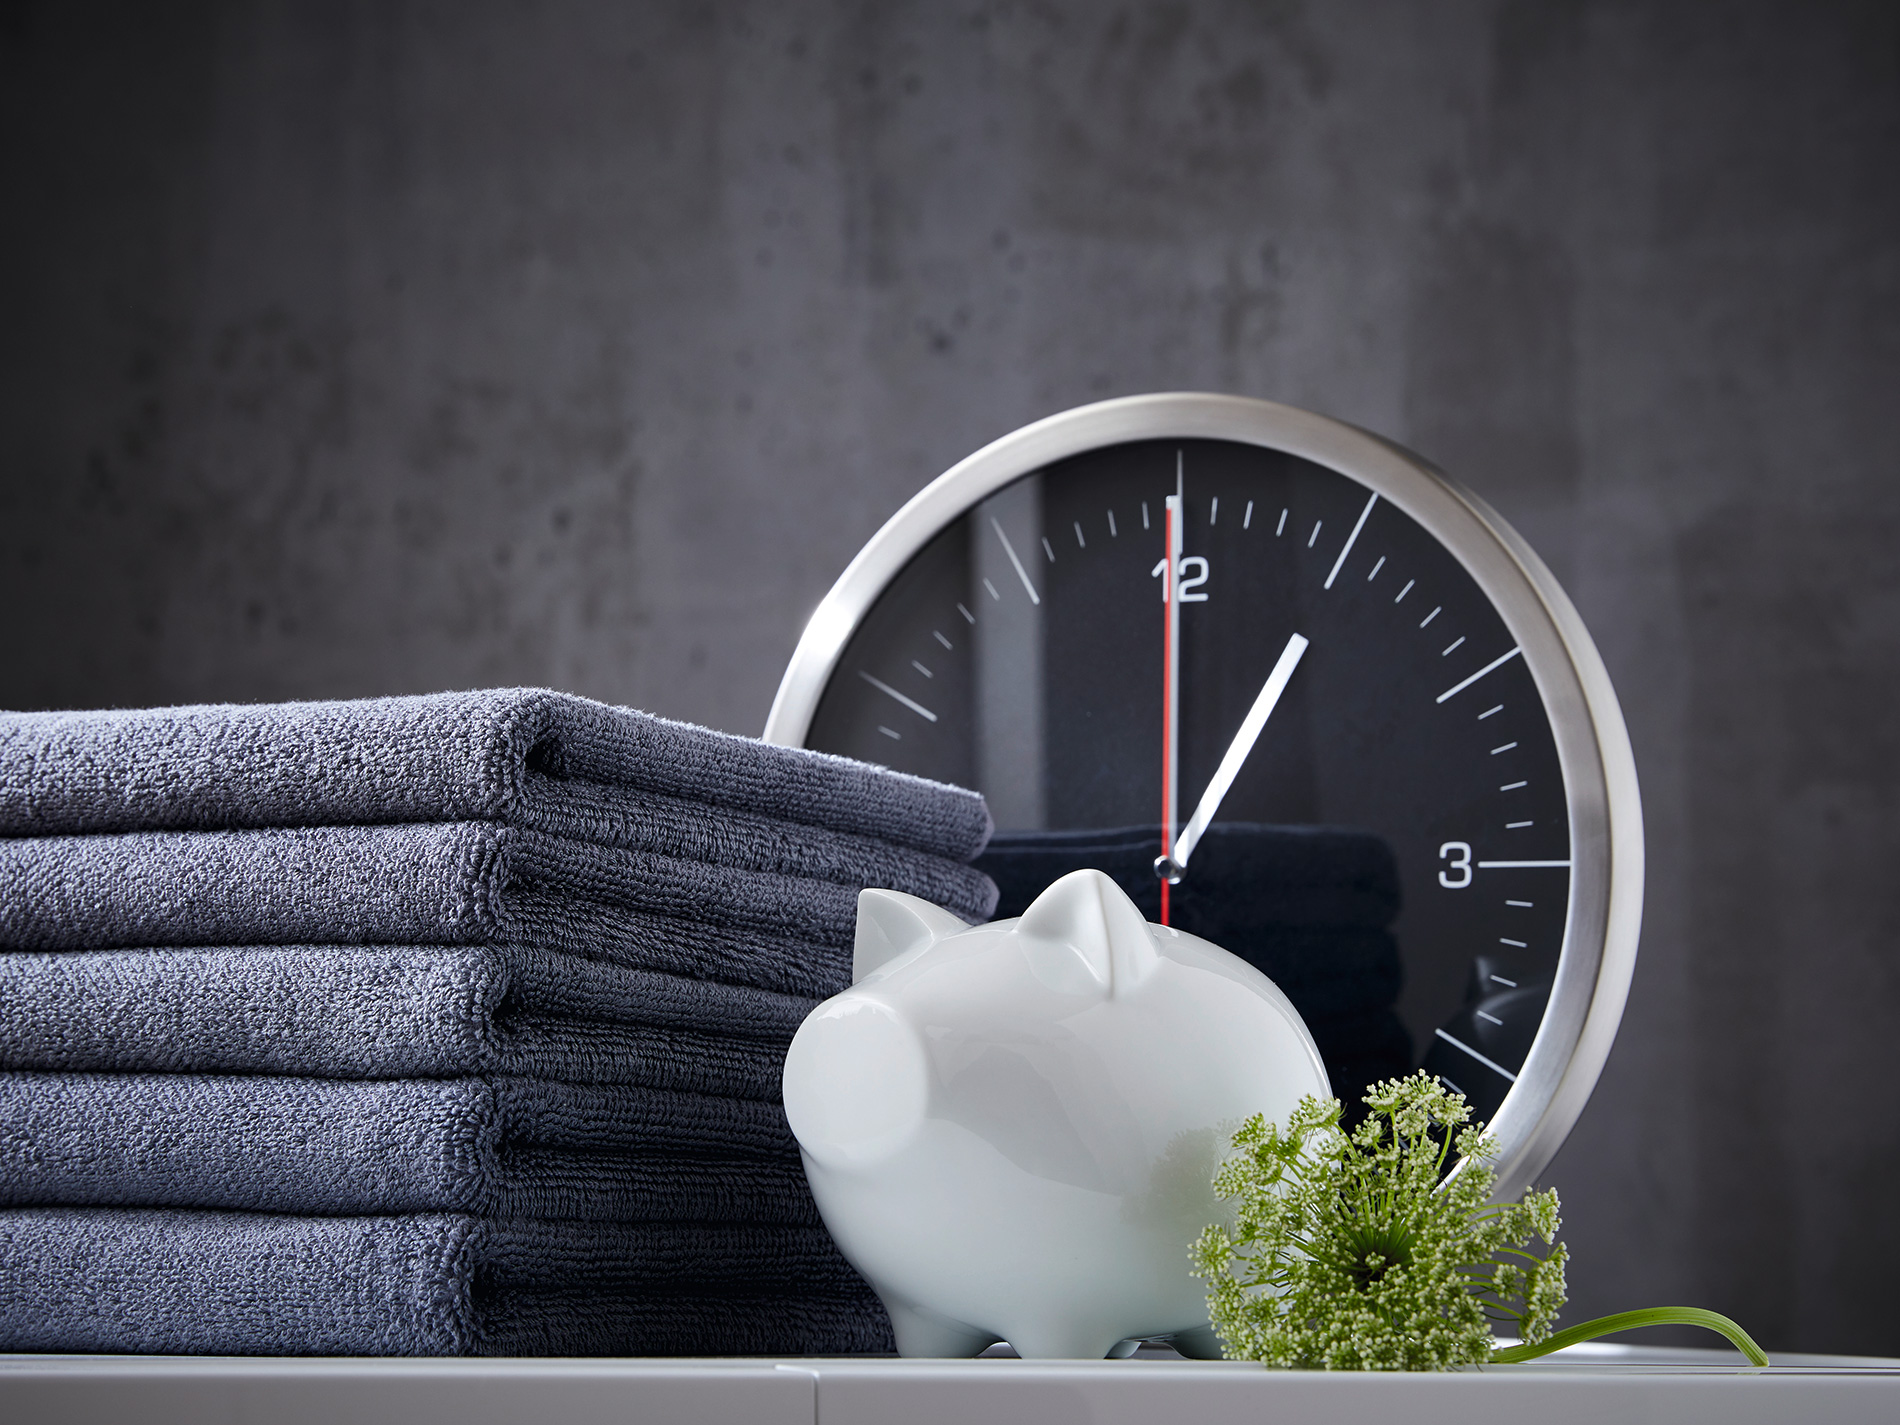 5 βήματα για να αφαιρέσετε την υγρασία από τα ρούχα - Φωτογραφία 5